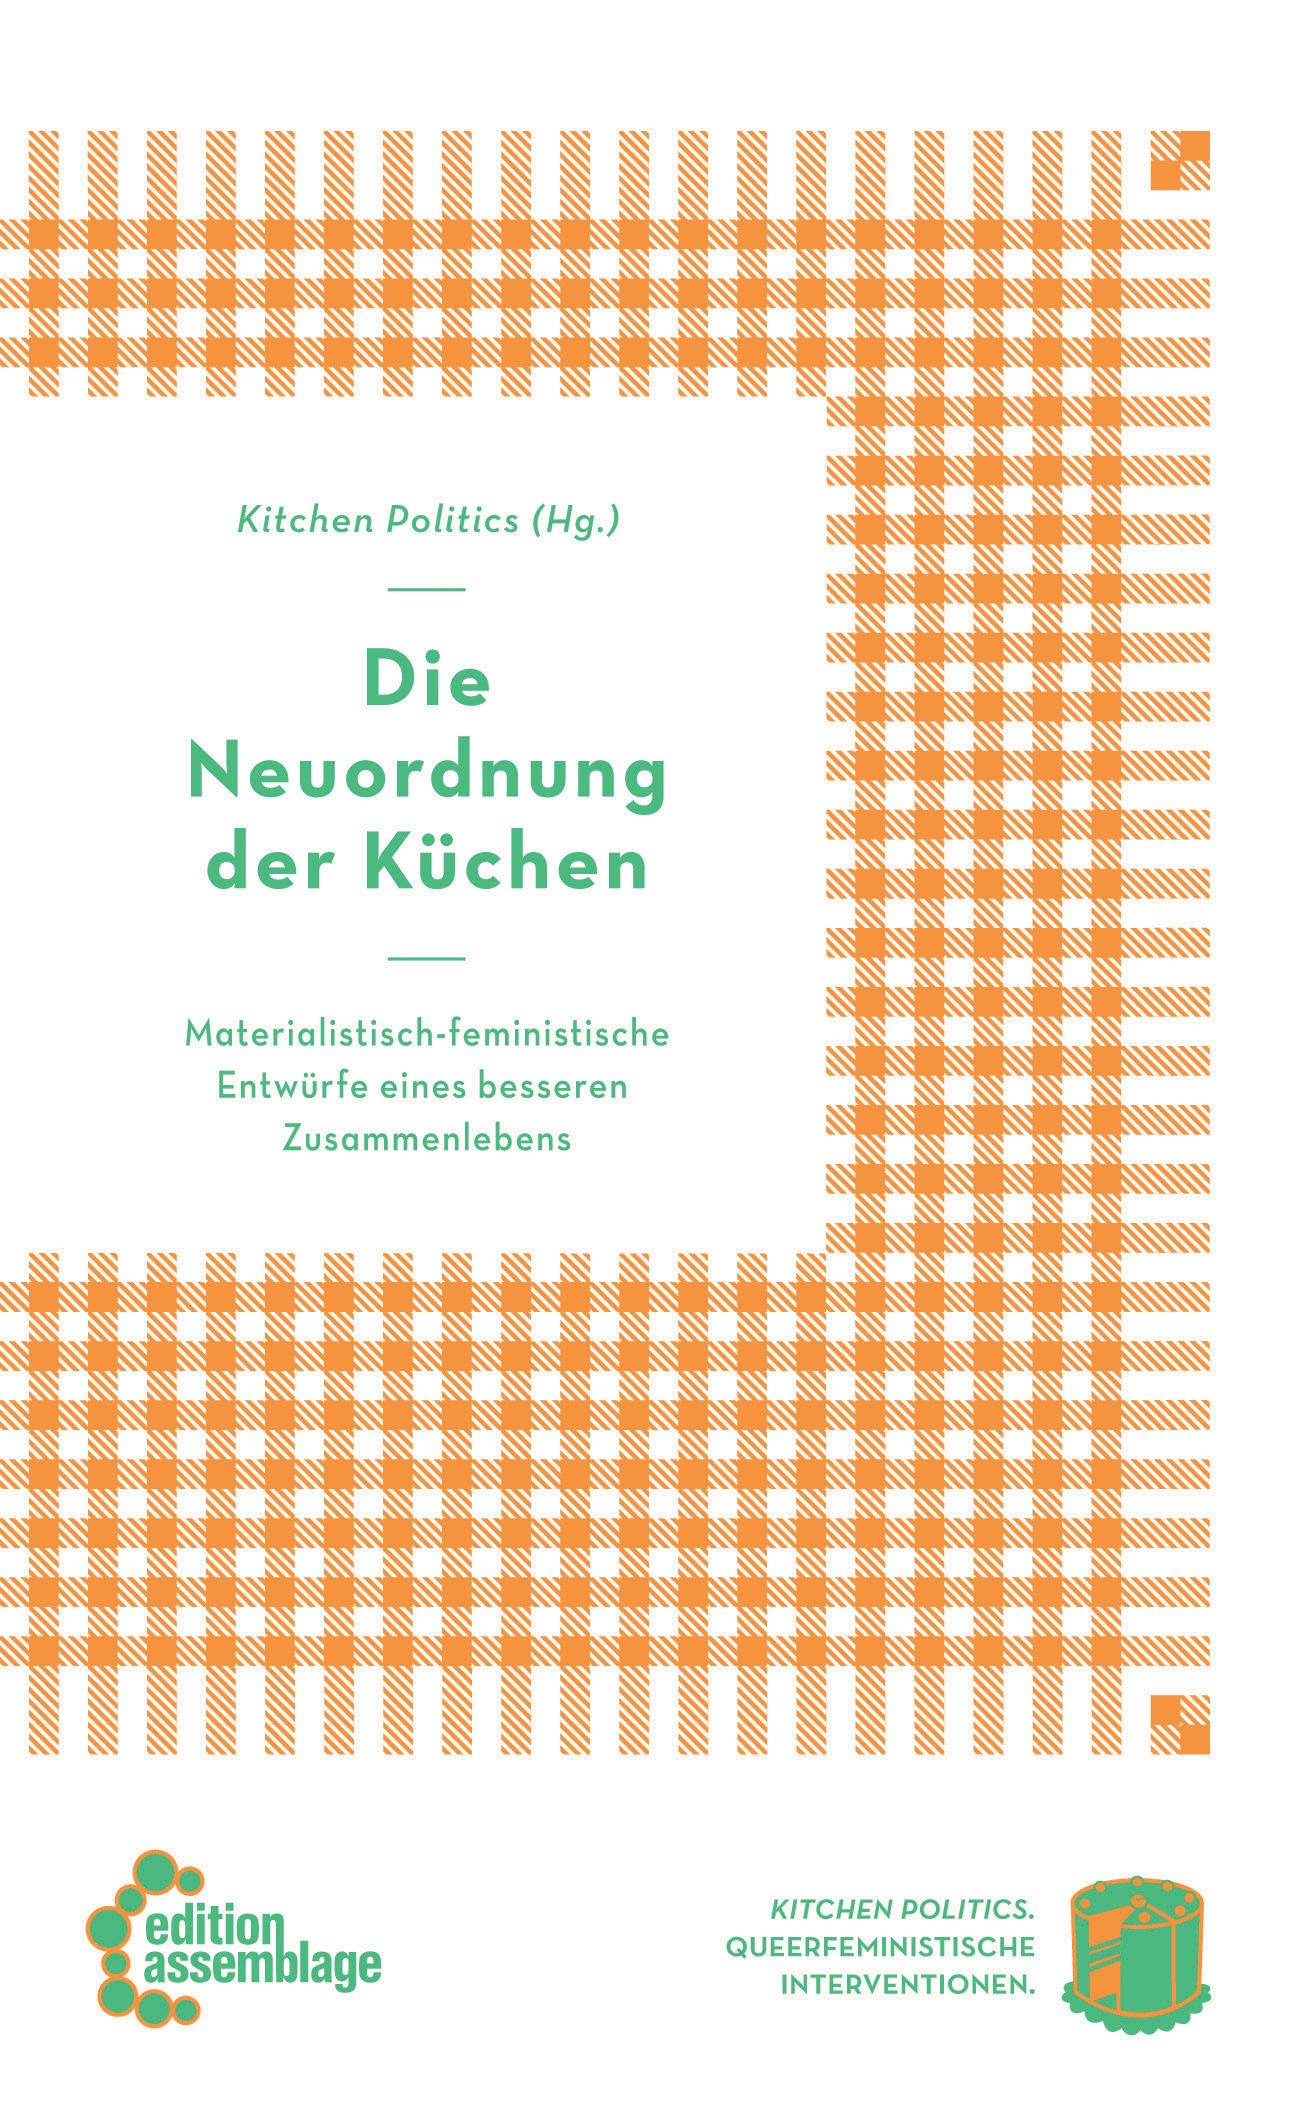 Abb. 1 Die Neuordnung der Küchen. Materialistisch-feministische Entwürfe eines besseren Zusammenlebens. (Quelle: edition assemblage)